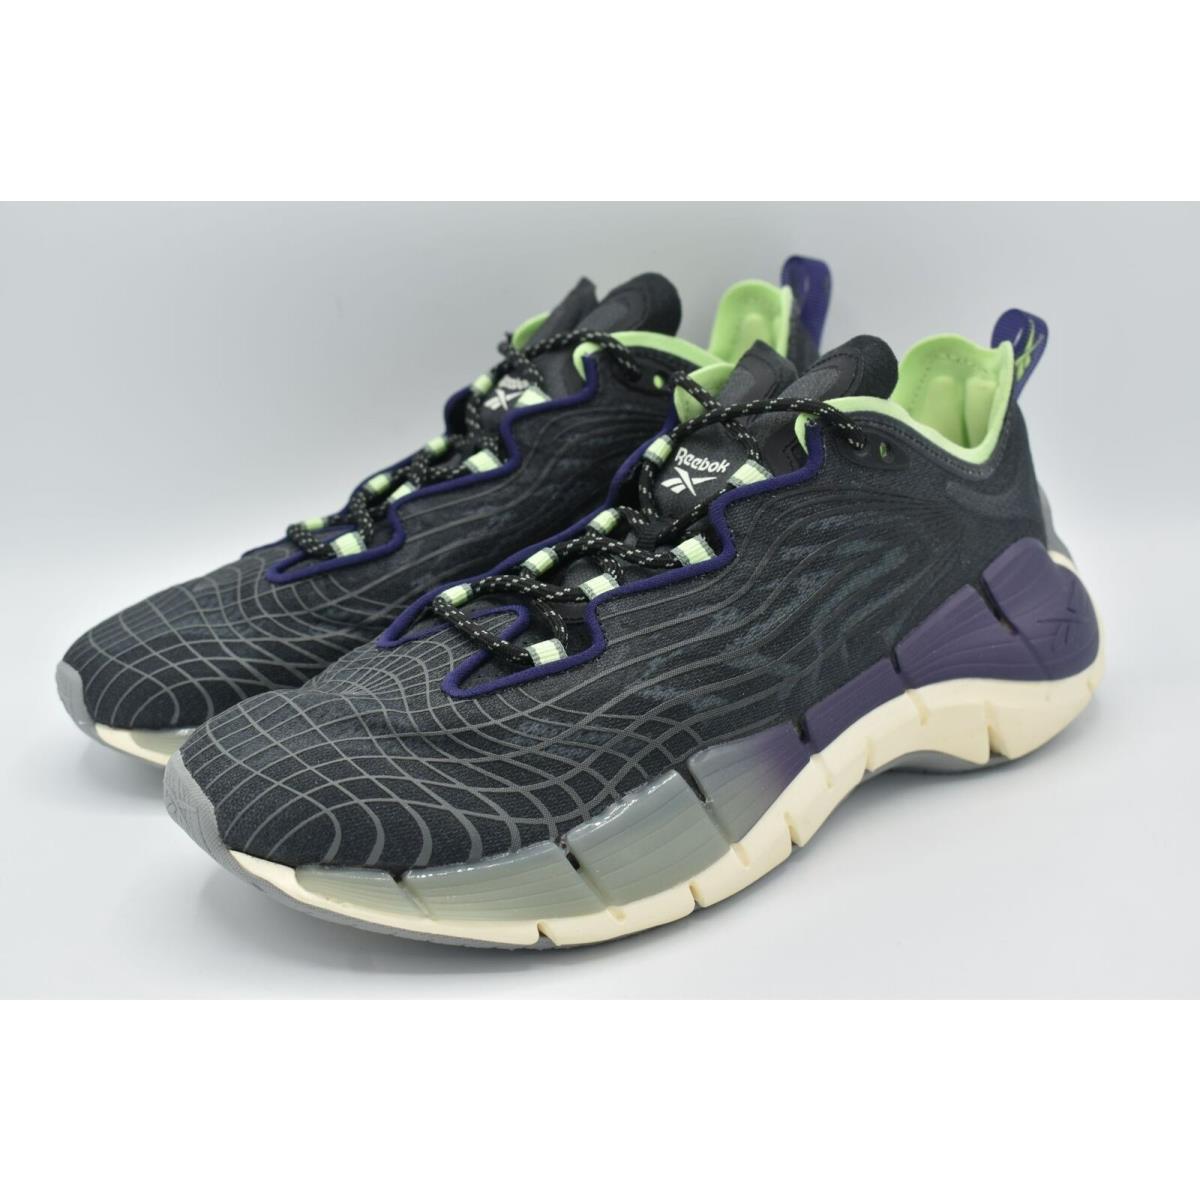 Reebok Womens Size 8.5 Zig Kinetica II Black Purple Mint Running Shoes Sneakers